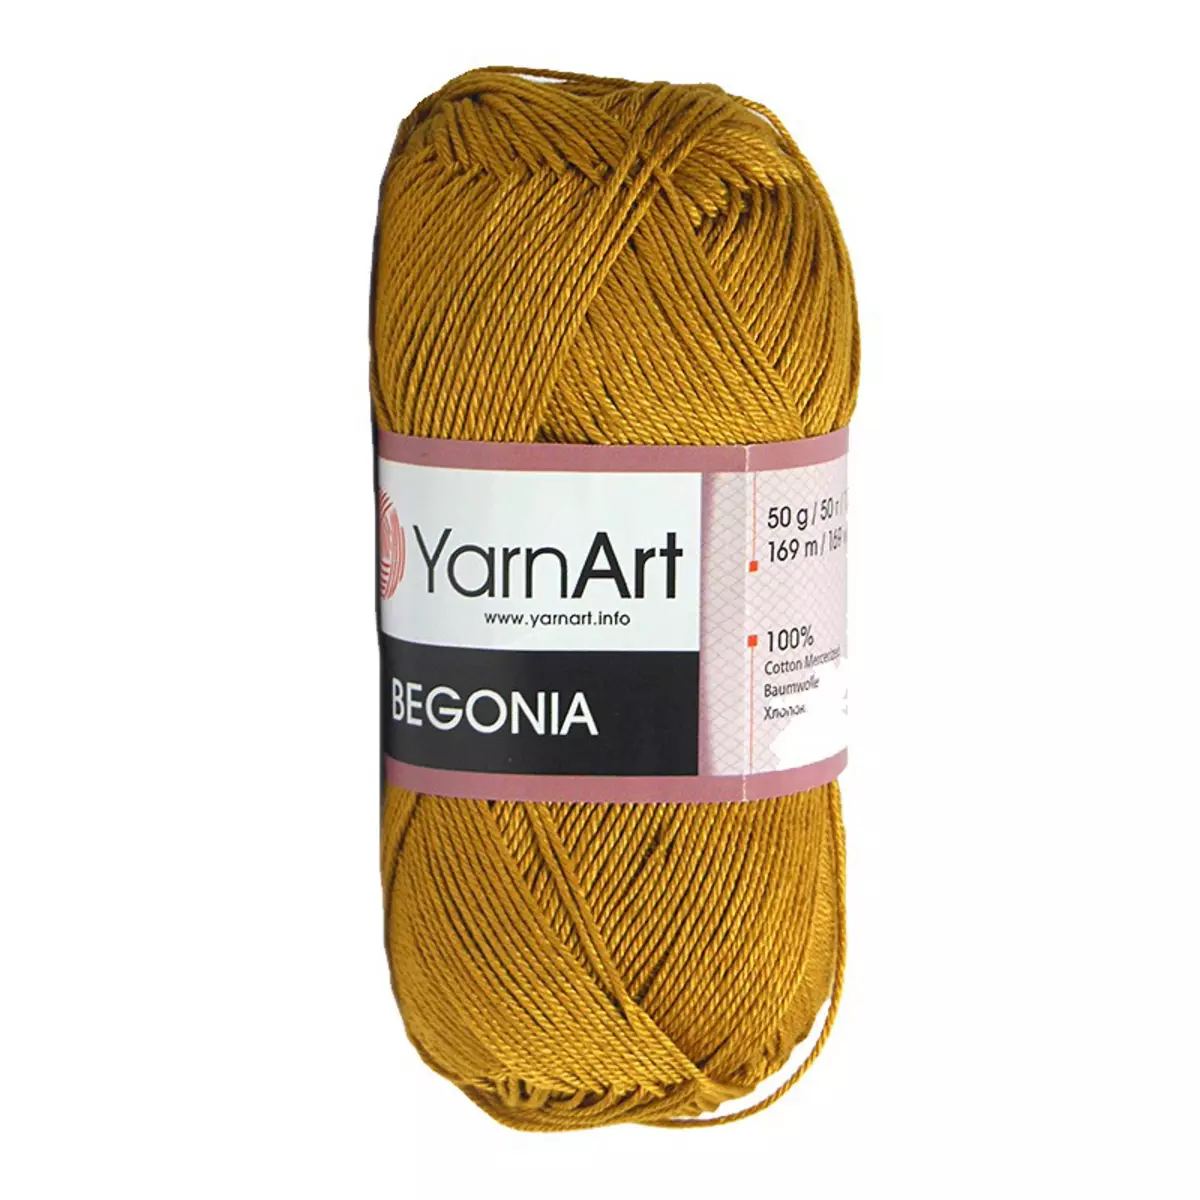 Hilado de YarnArt: de algodón y prendas de punto, angora y terciopelo, fantasía y otros hilos populares para tejer 6699_14